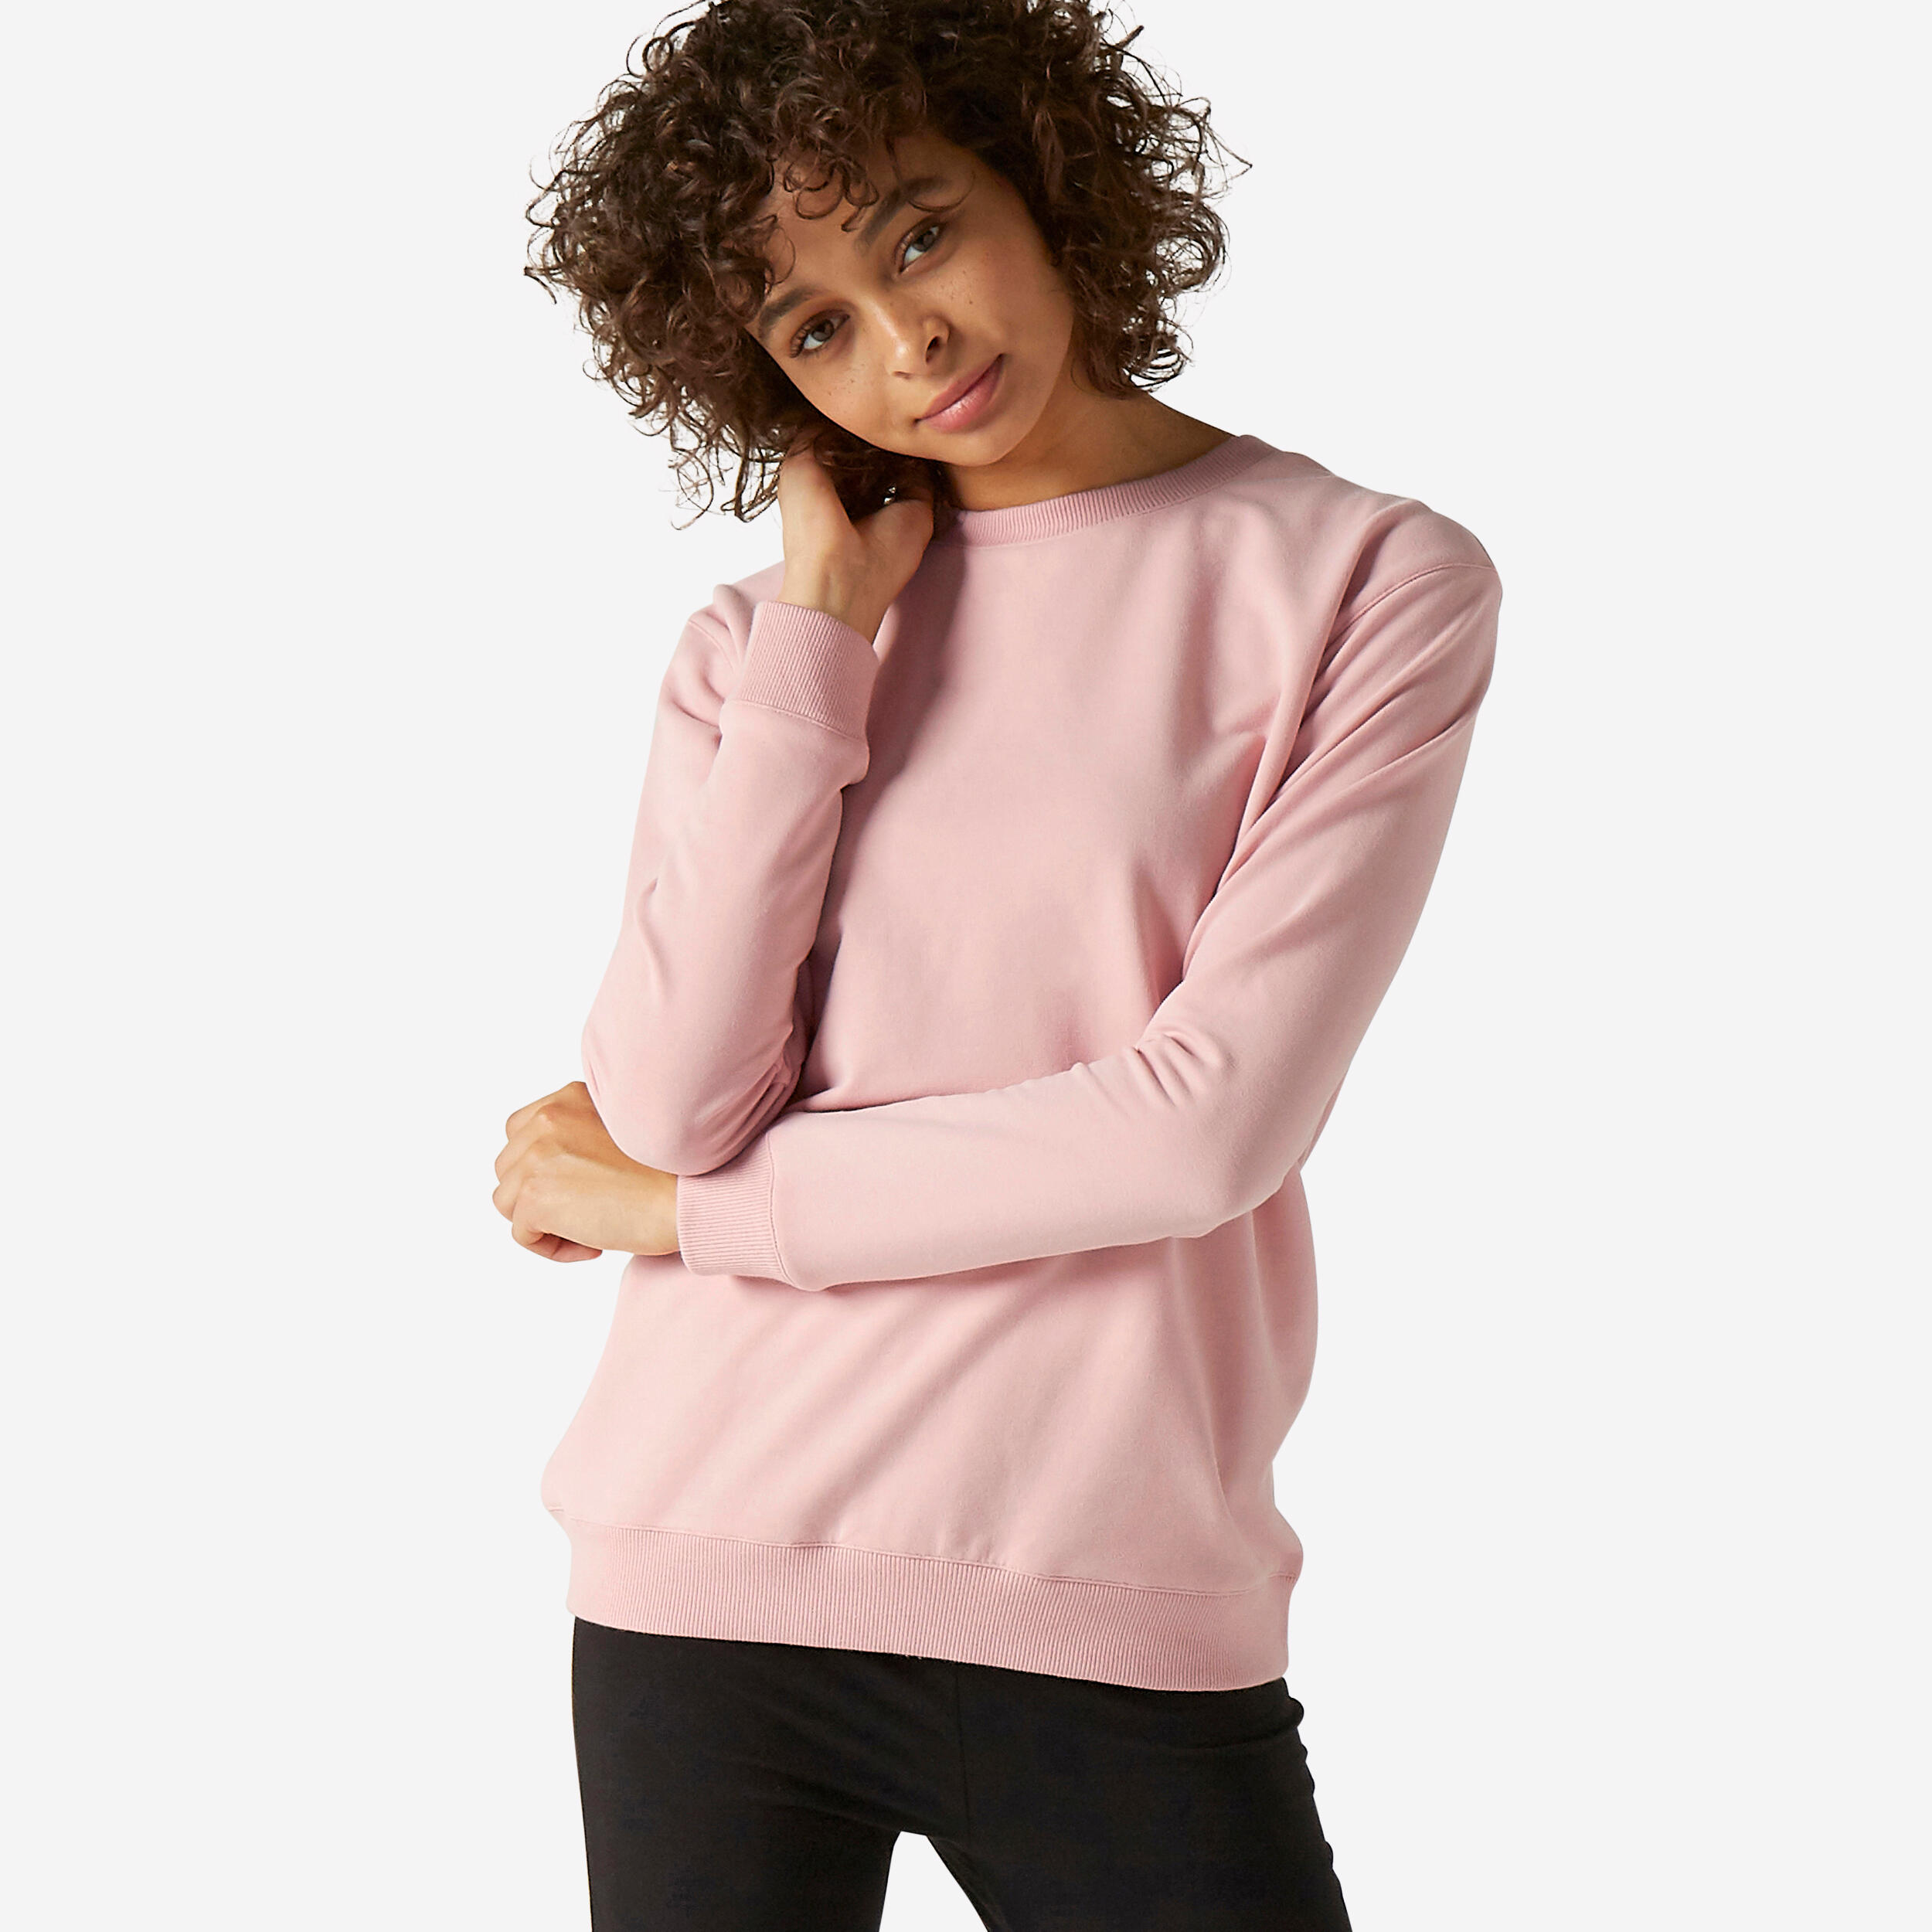 Decathlon sweatshirt Rosa S DAMEN Pullovers & Sweatshirts Basisch Rabatt 78 % 